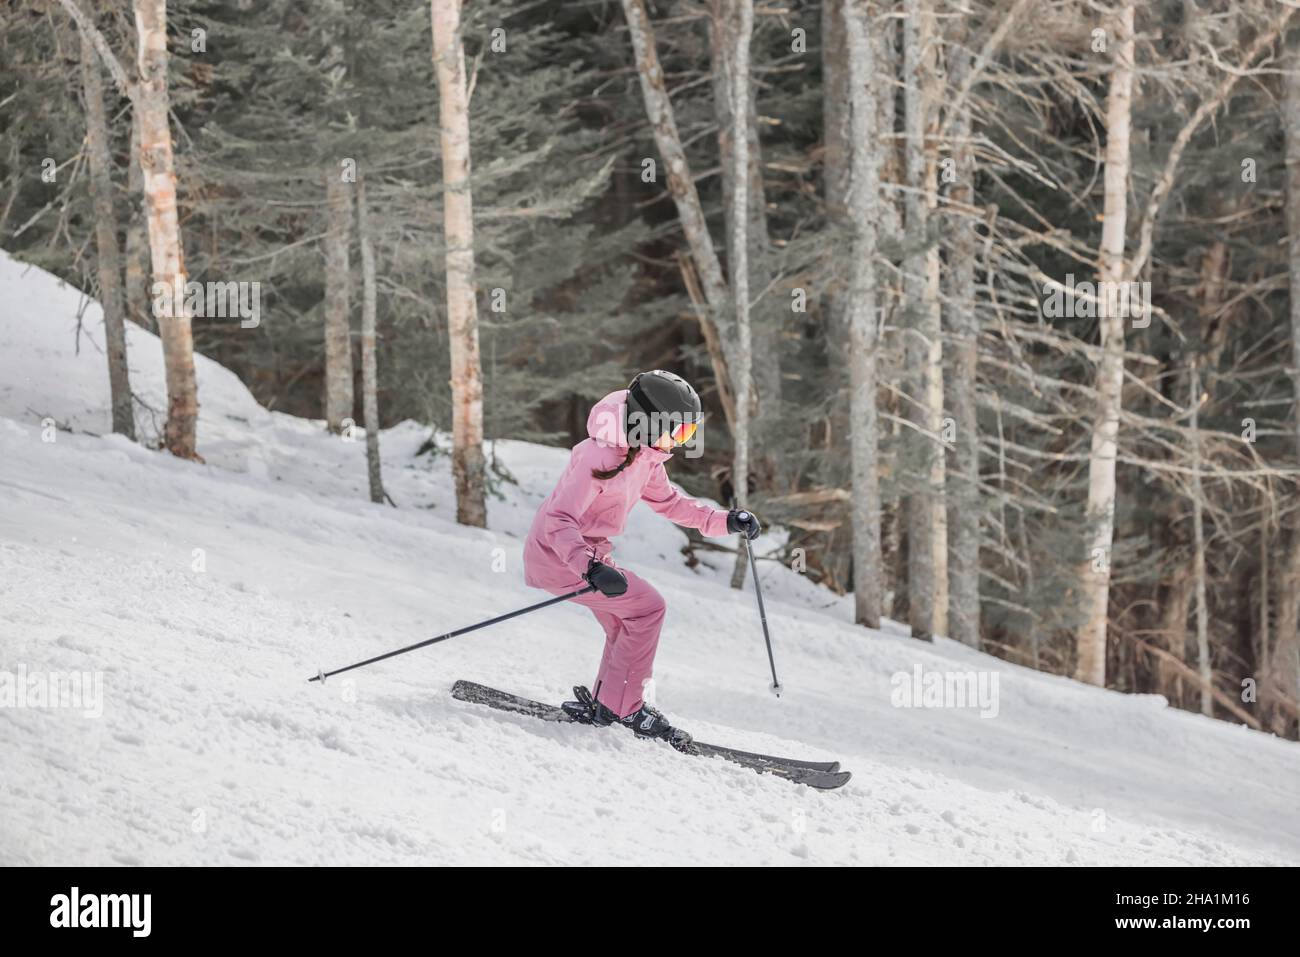 Downhillski Alpine Ski Foto. Frau beim Skifahren, die an einem verschneiten Tag Spaß auf der Piste hat - Wintersport und Aktivitäten. Coole Skibekleidung Stockfoto